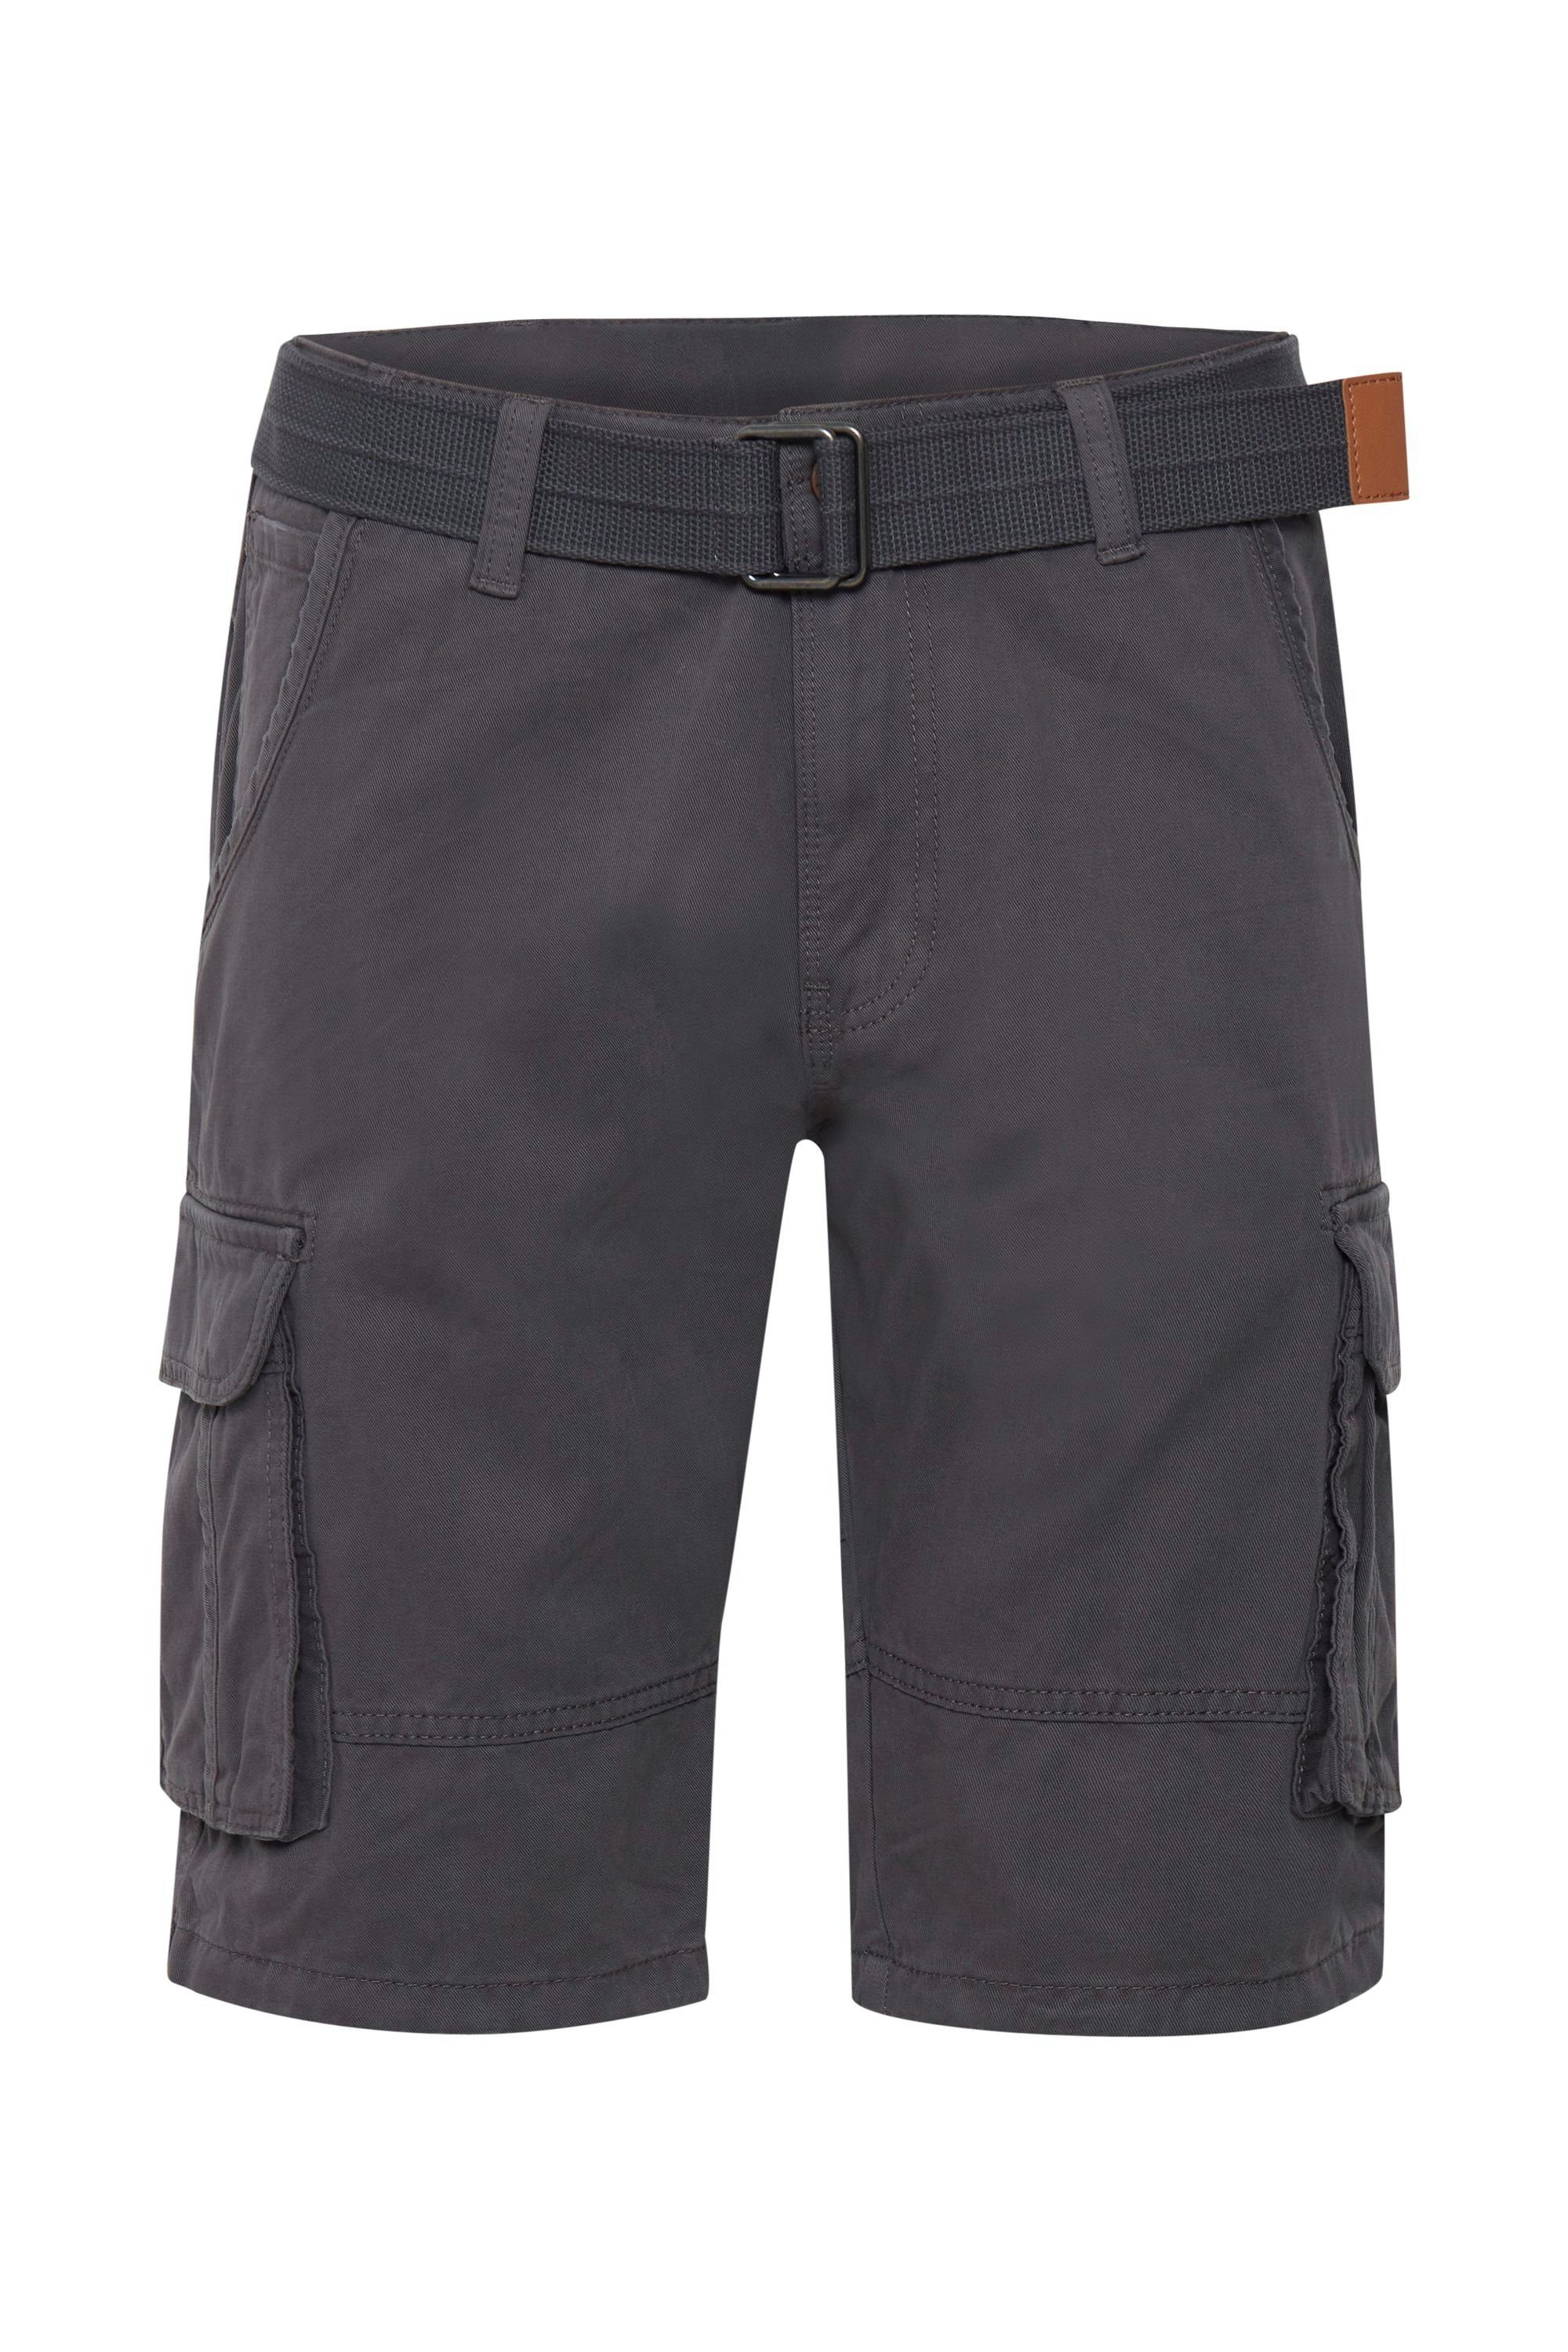 Indicode Cargoshorts IDCosta - Shorts - 59401MM kurze Hose mit Gürtel Dark Grey (910)